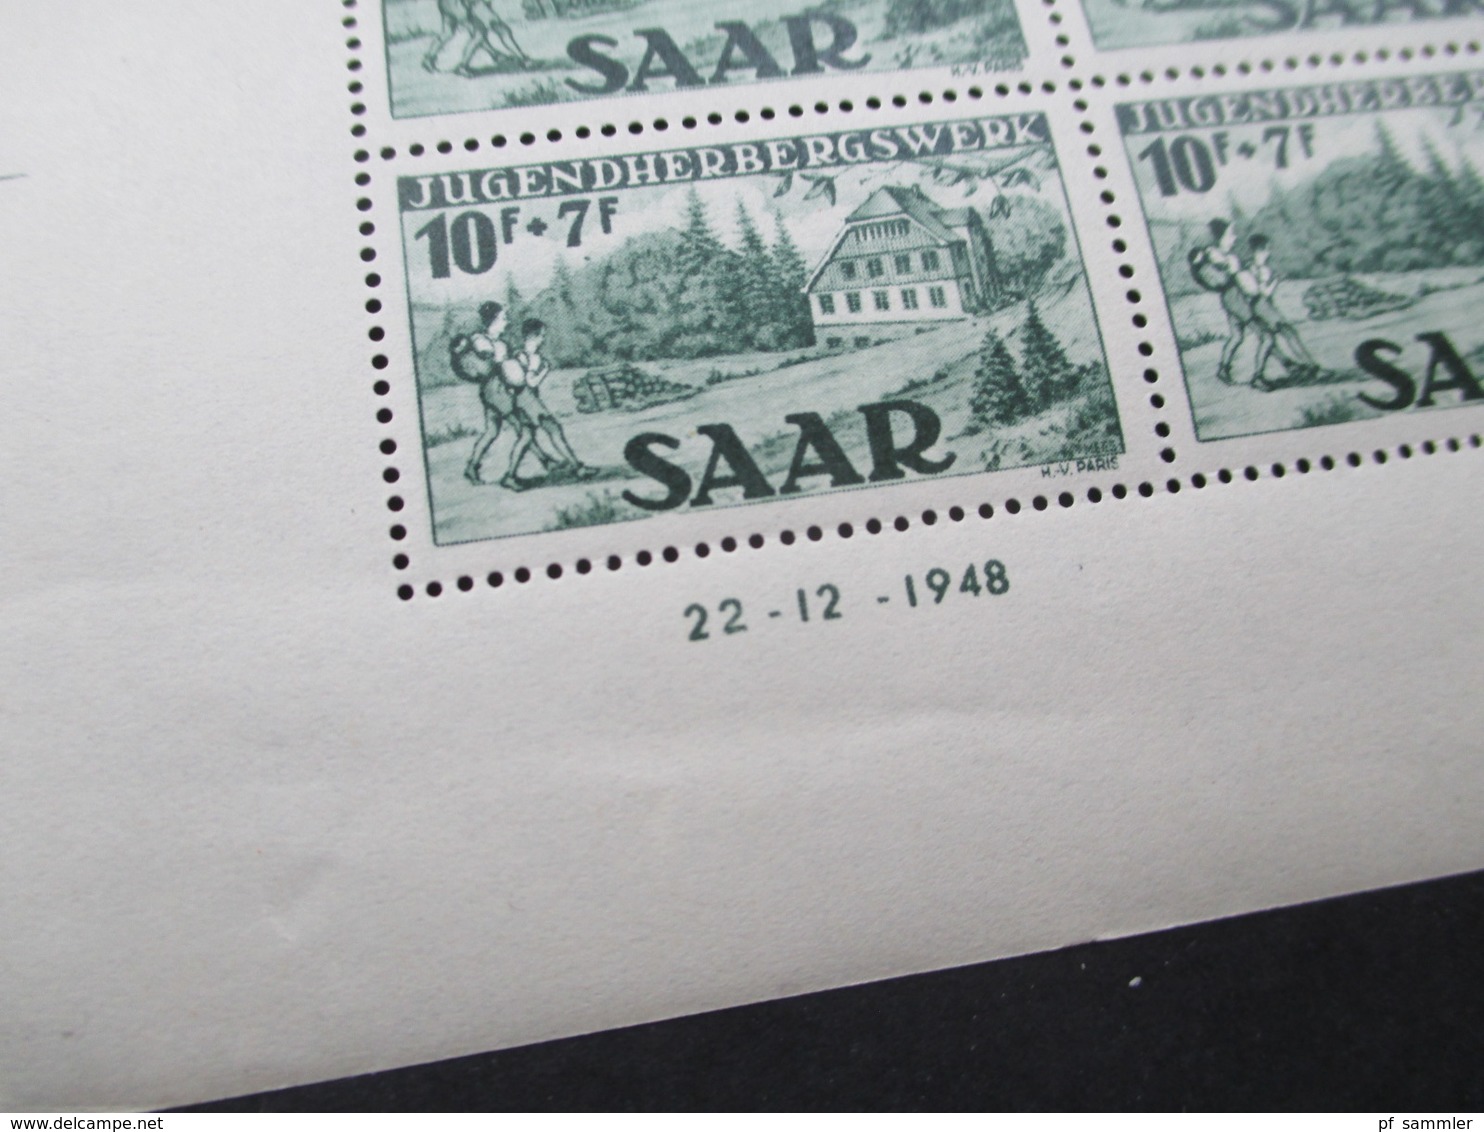 Saarland 1948 Jugendherbergswerk als 4er Blocks Nr. 263 mit Type I und II + Druckdatum! sauber ** / postfrisch